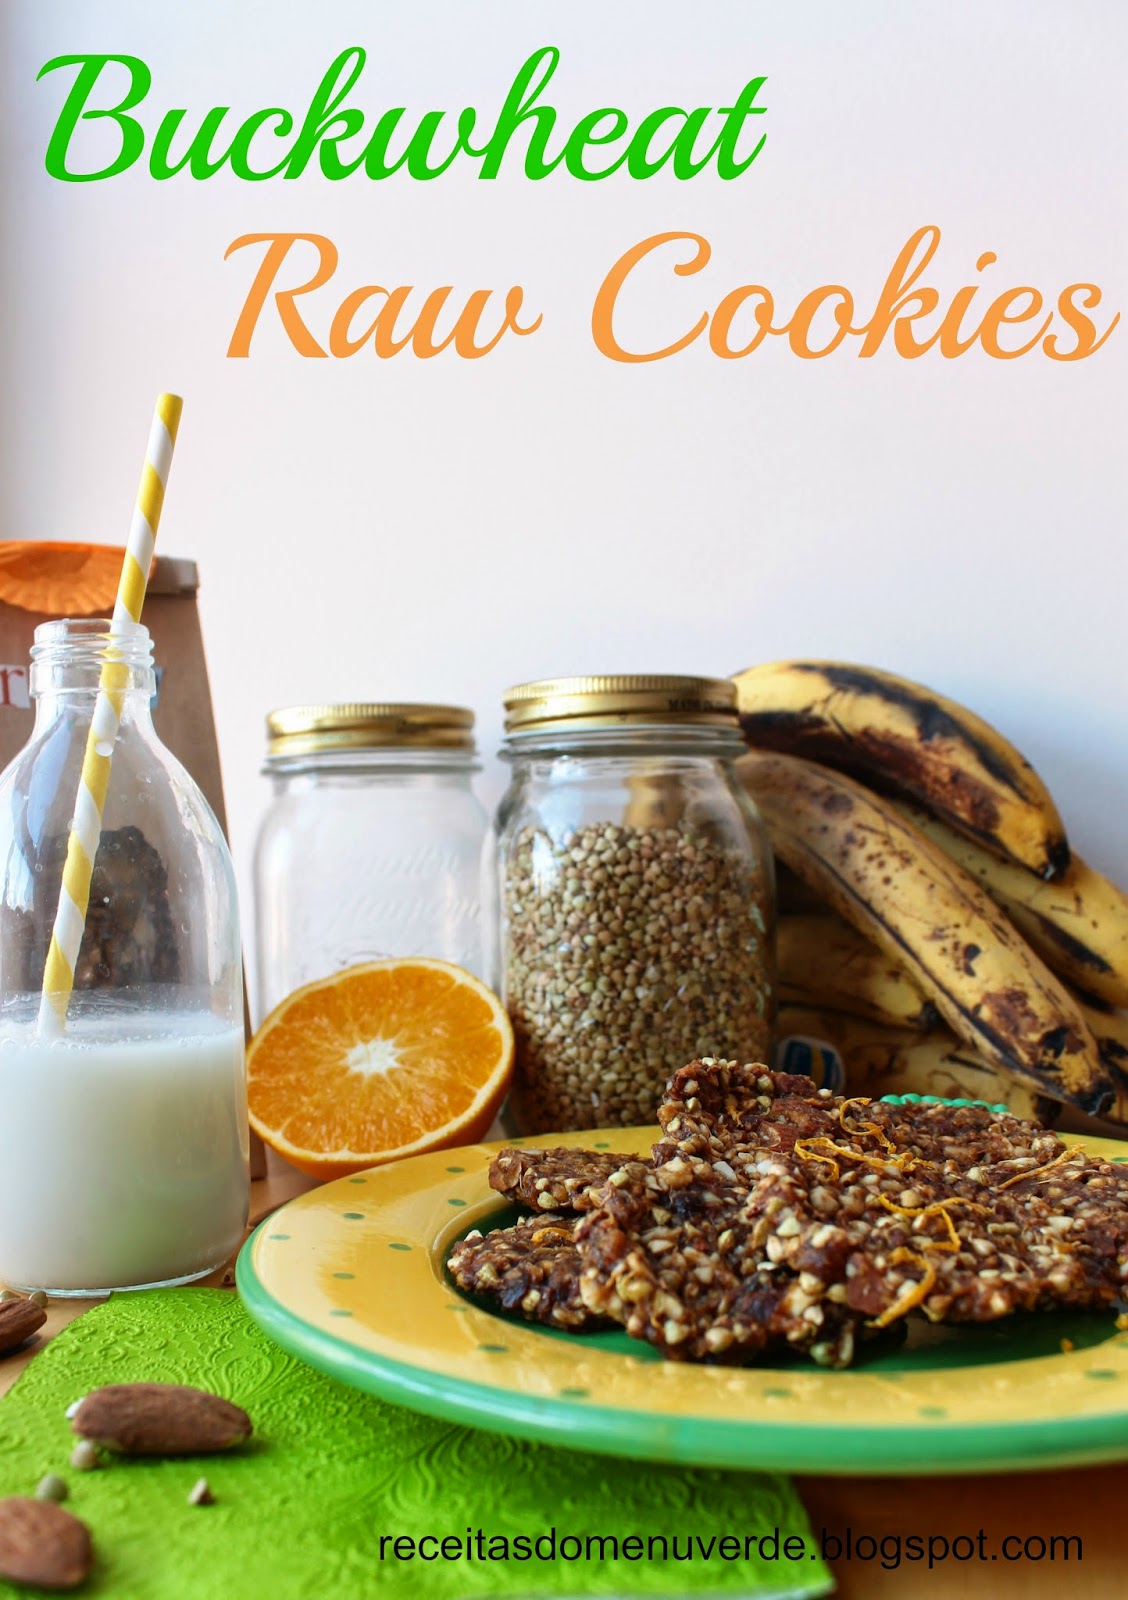 Biscoitos crús de trigo sarraceno - Buckwheat raw cookies